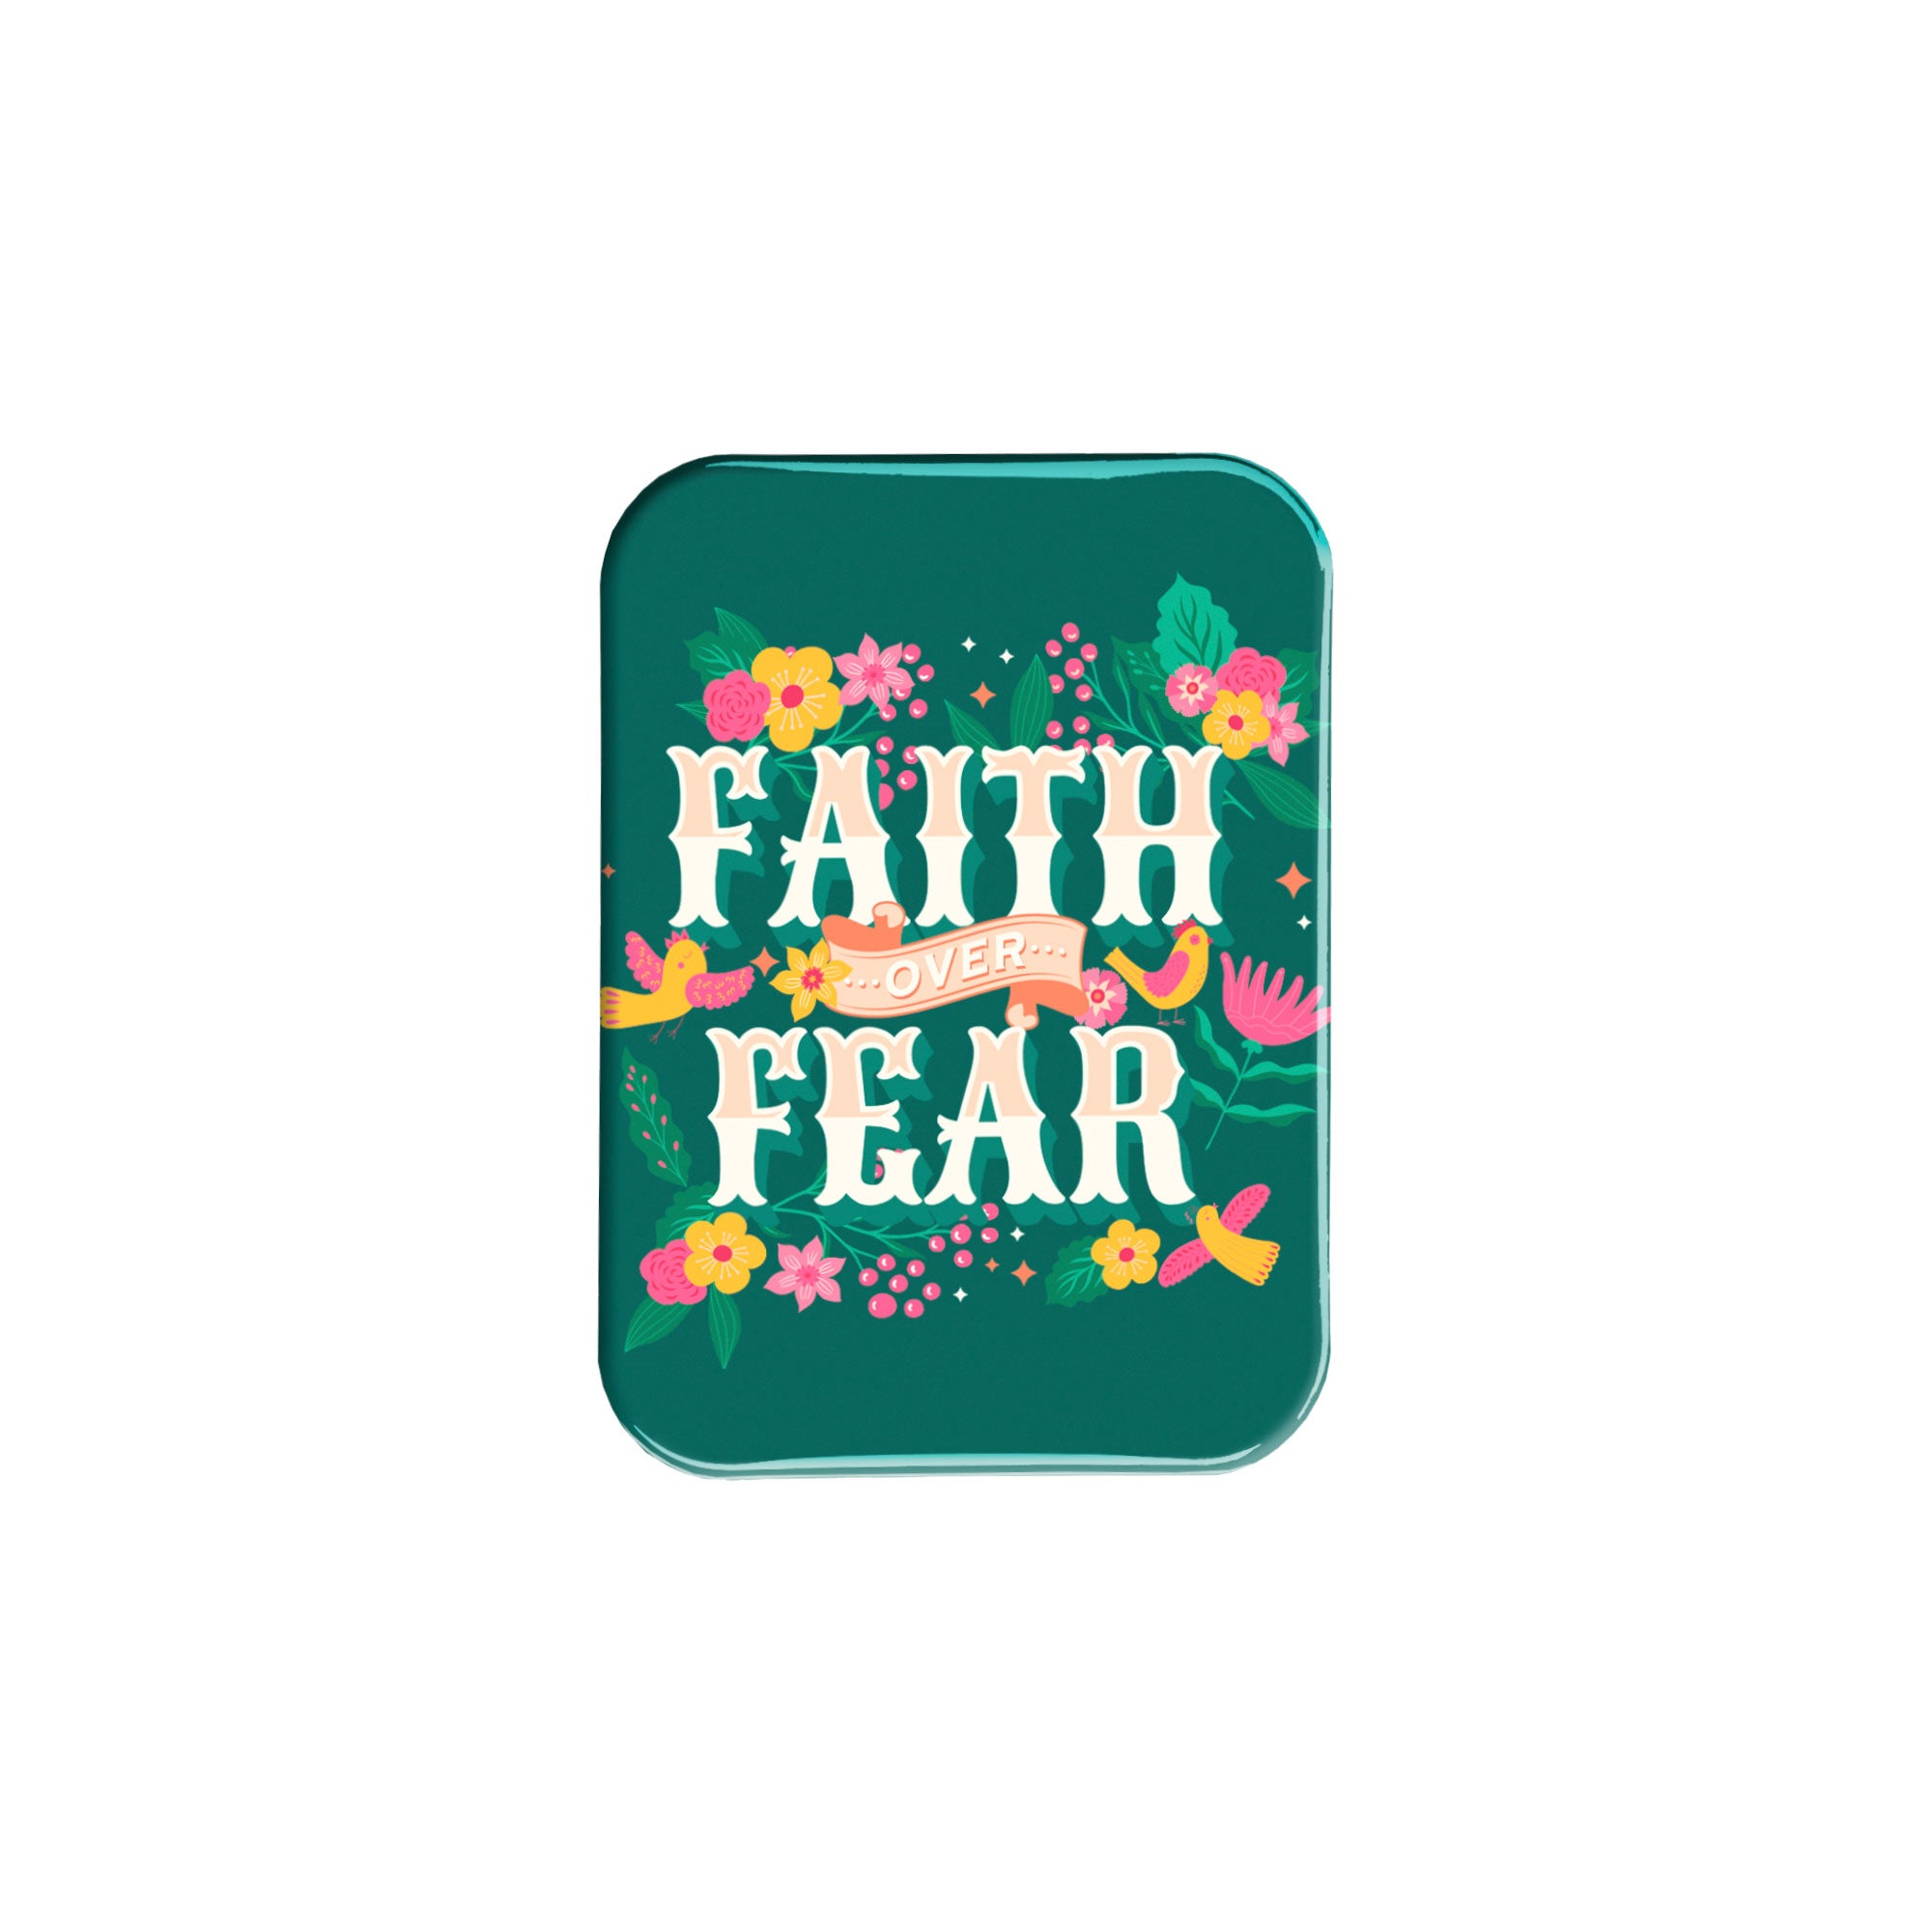 "Faith over Fear" - 2.5" X 3.5" Rectangle Fridge Magnets